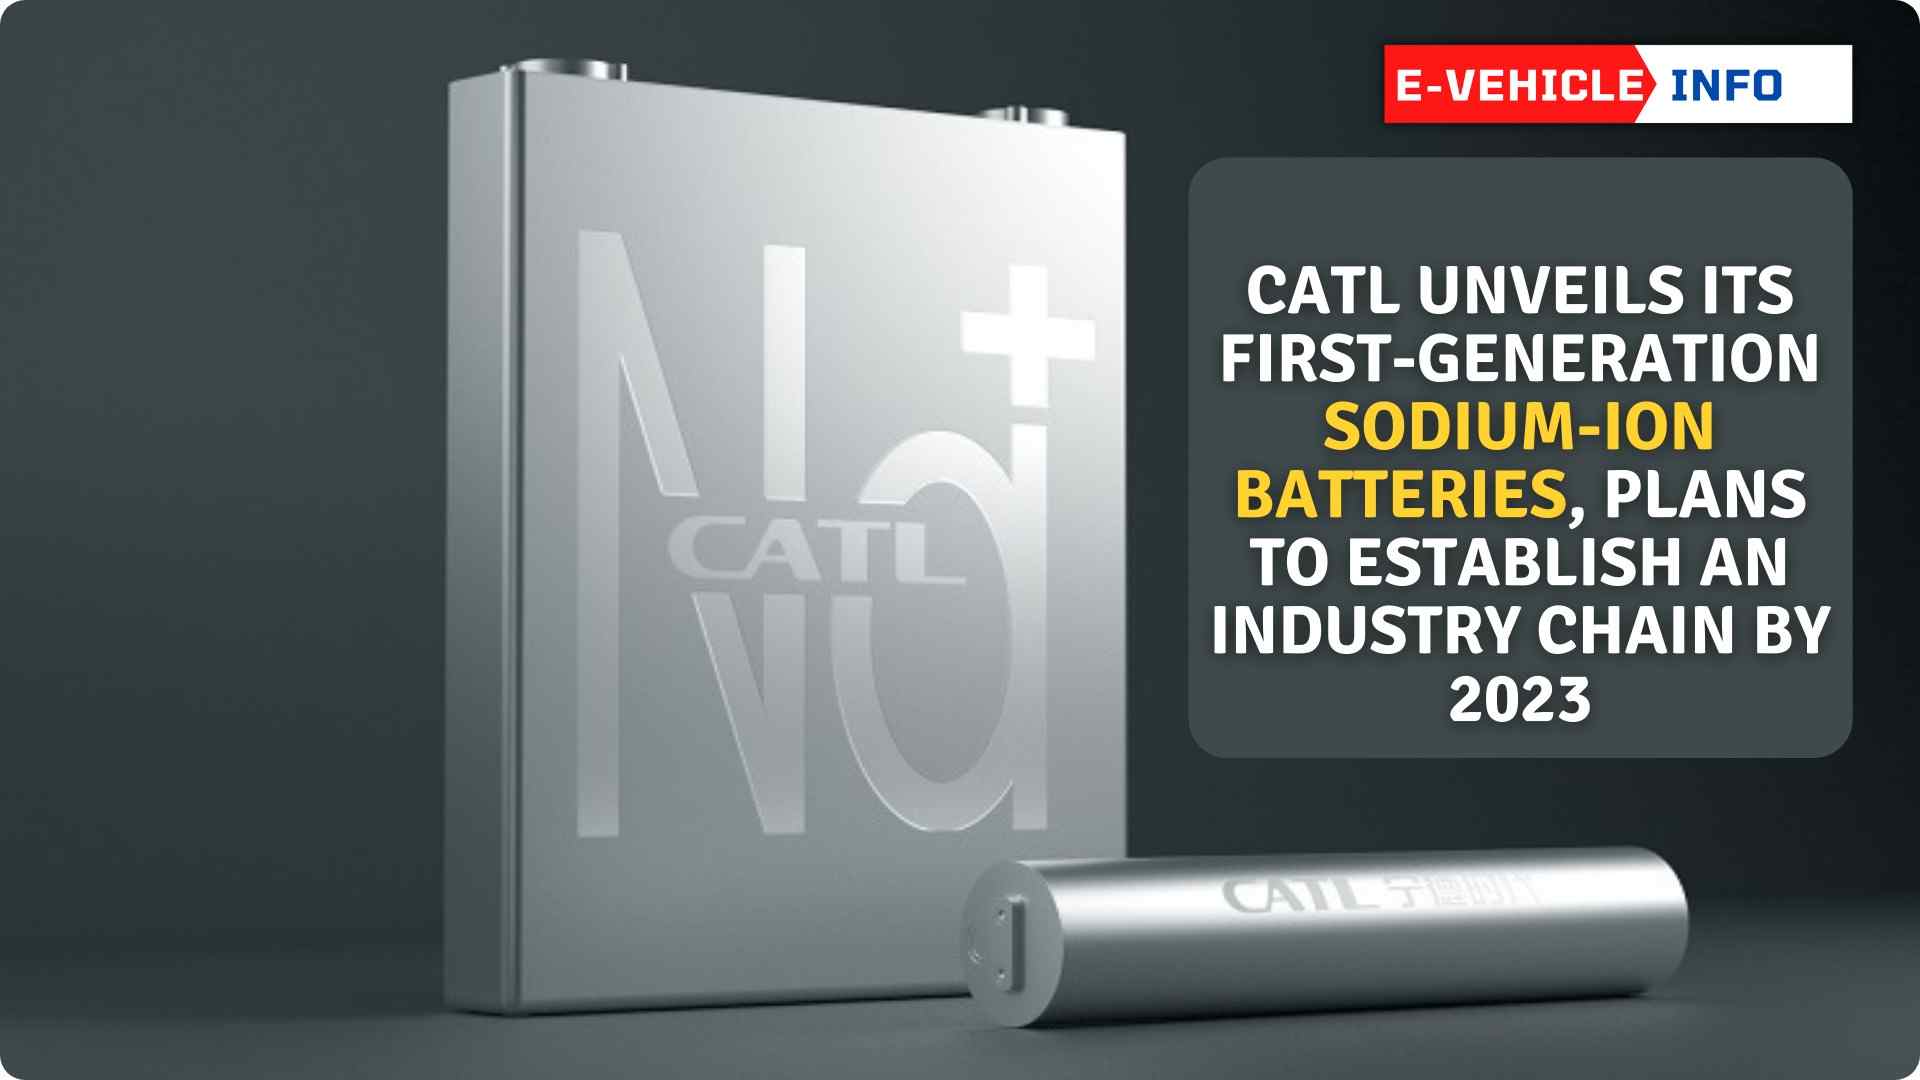 https://e-vehicleinfo.com/catl-unveils-sodium-ion-batteries/